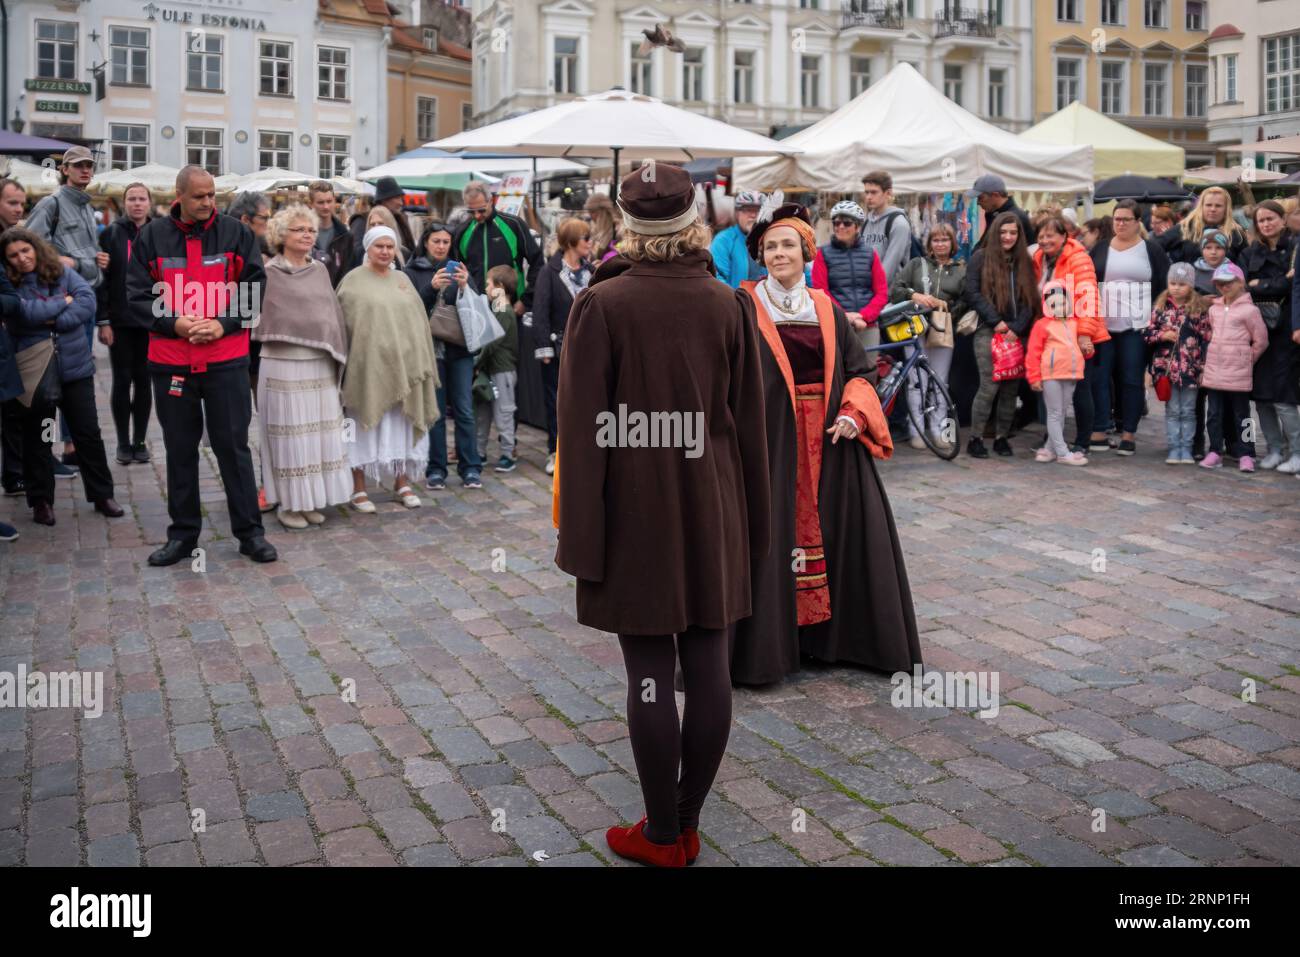 Traditionelle Tanzvorstellung auf dem Rathausplatz, mittelalterliches Festival - Tallinn, Estland Stockfoto